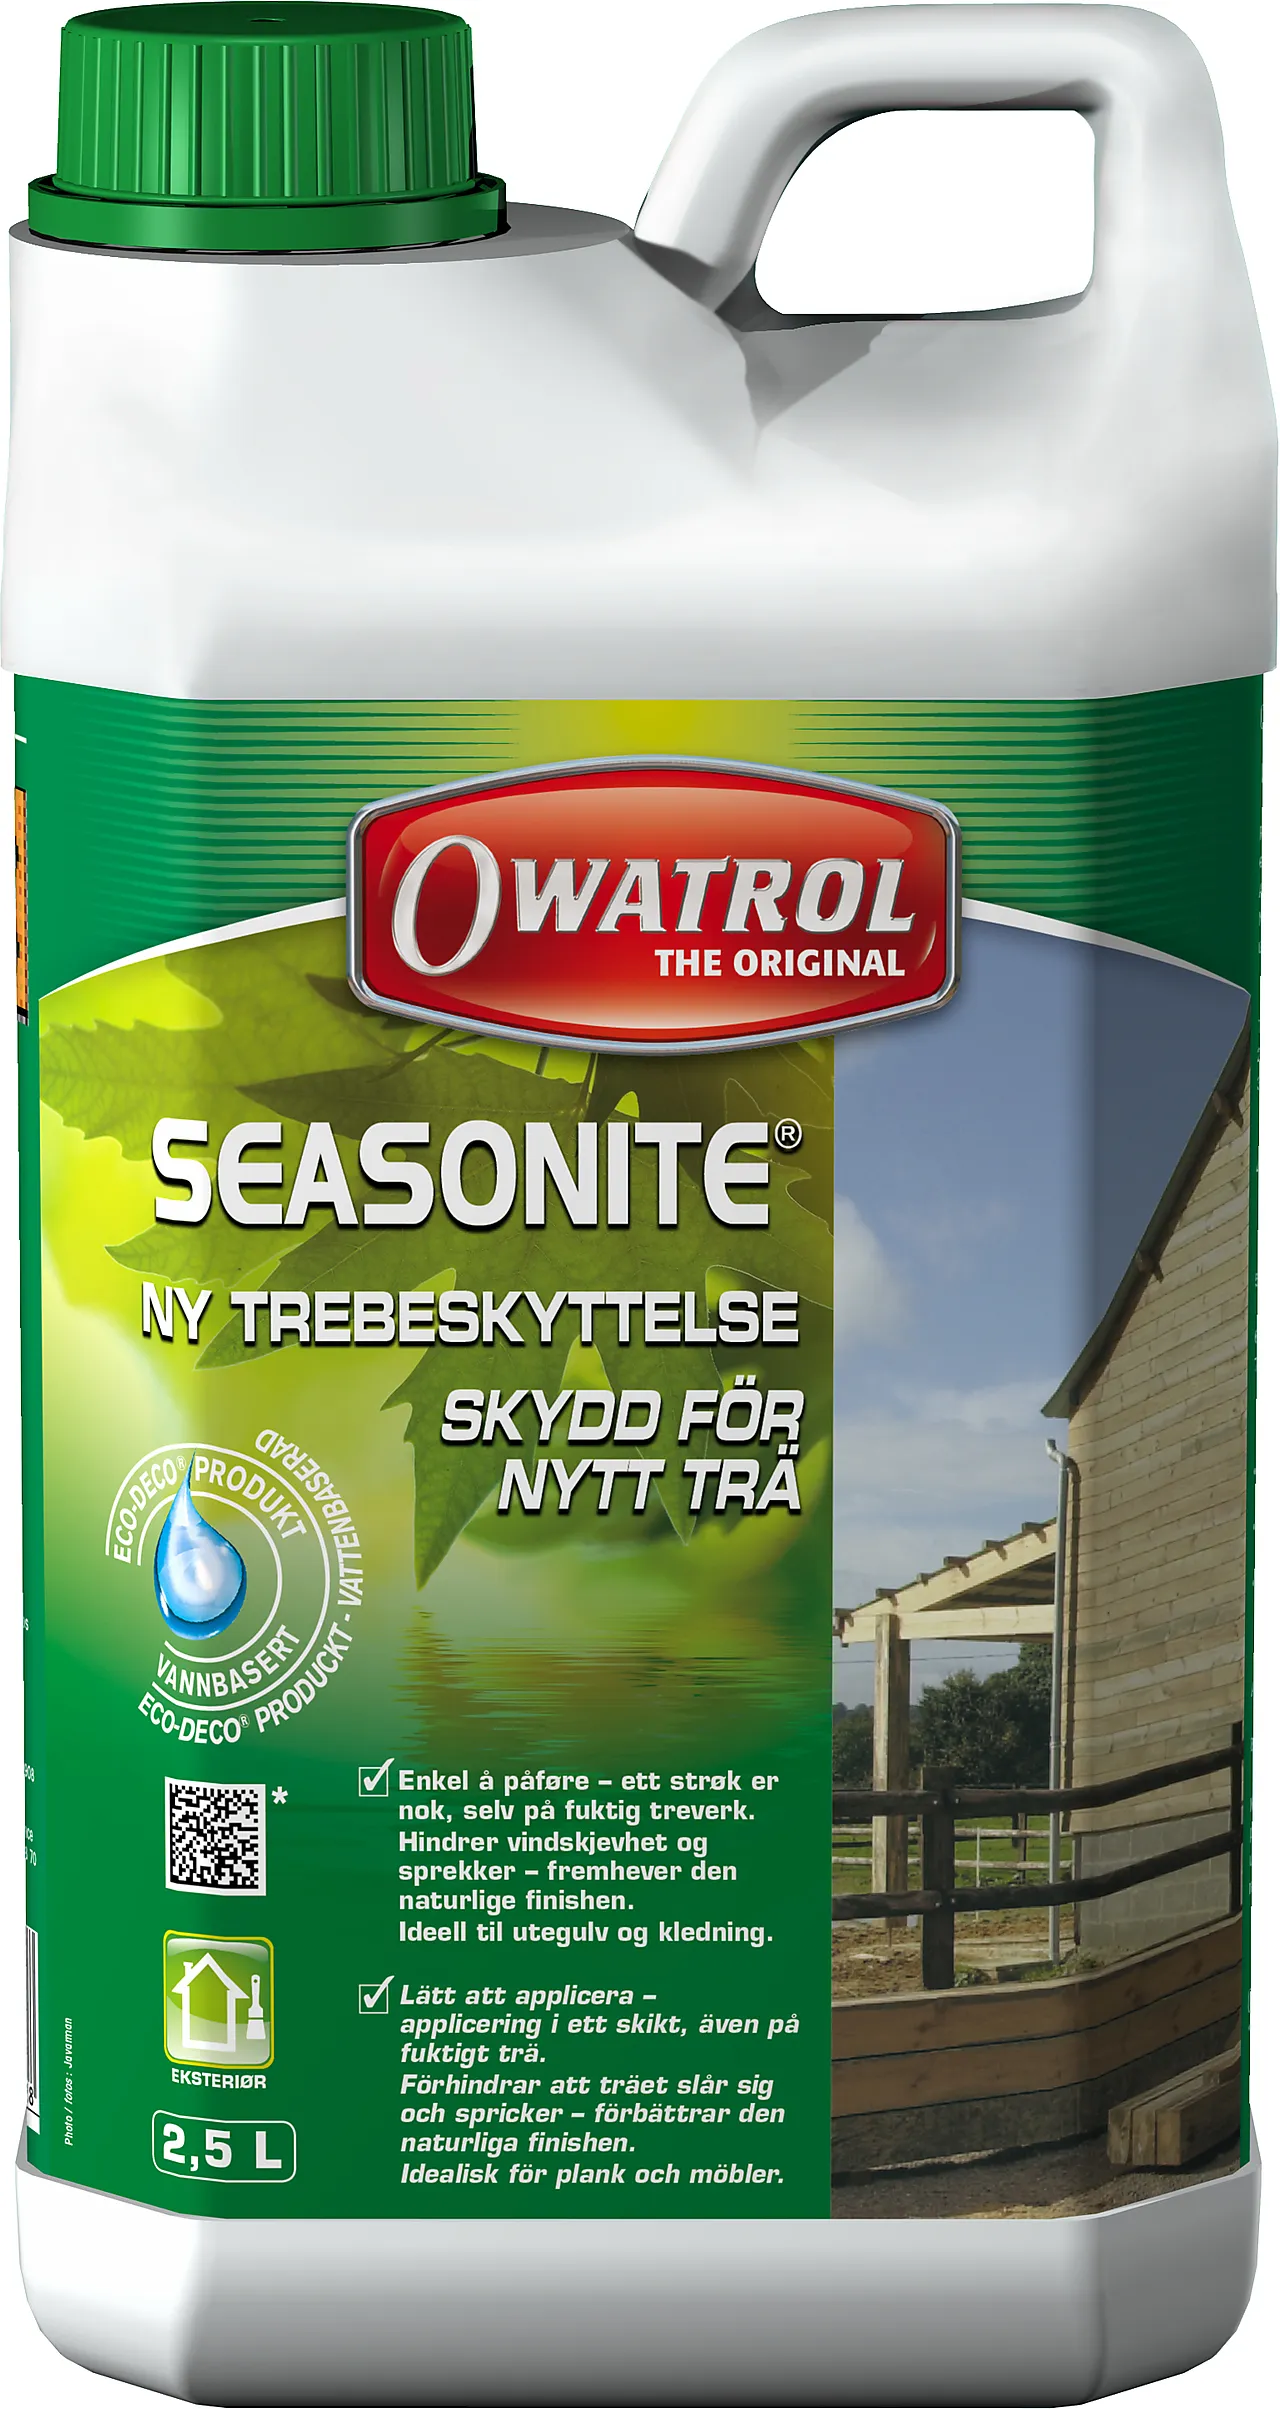 Trebehandling 2,5 liter seasonite owatrol seasonite 2,5l